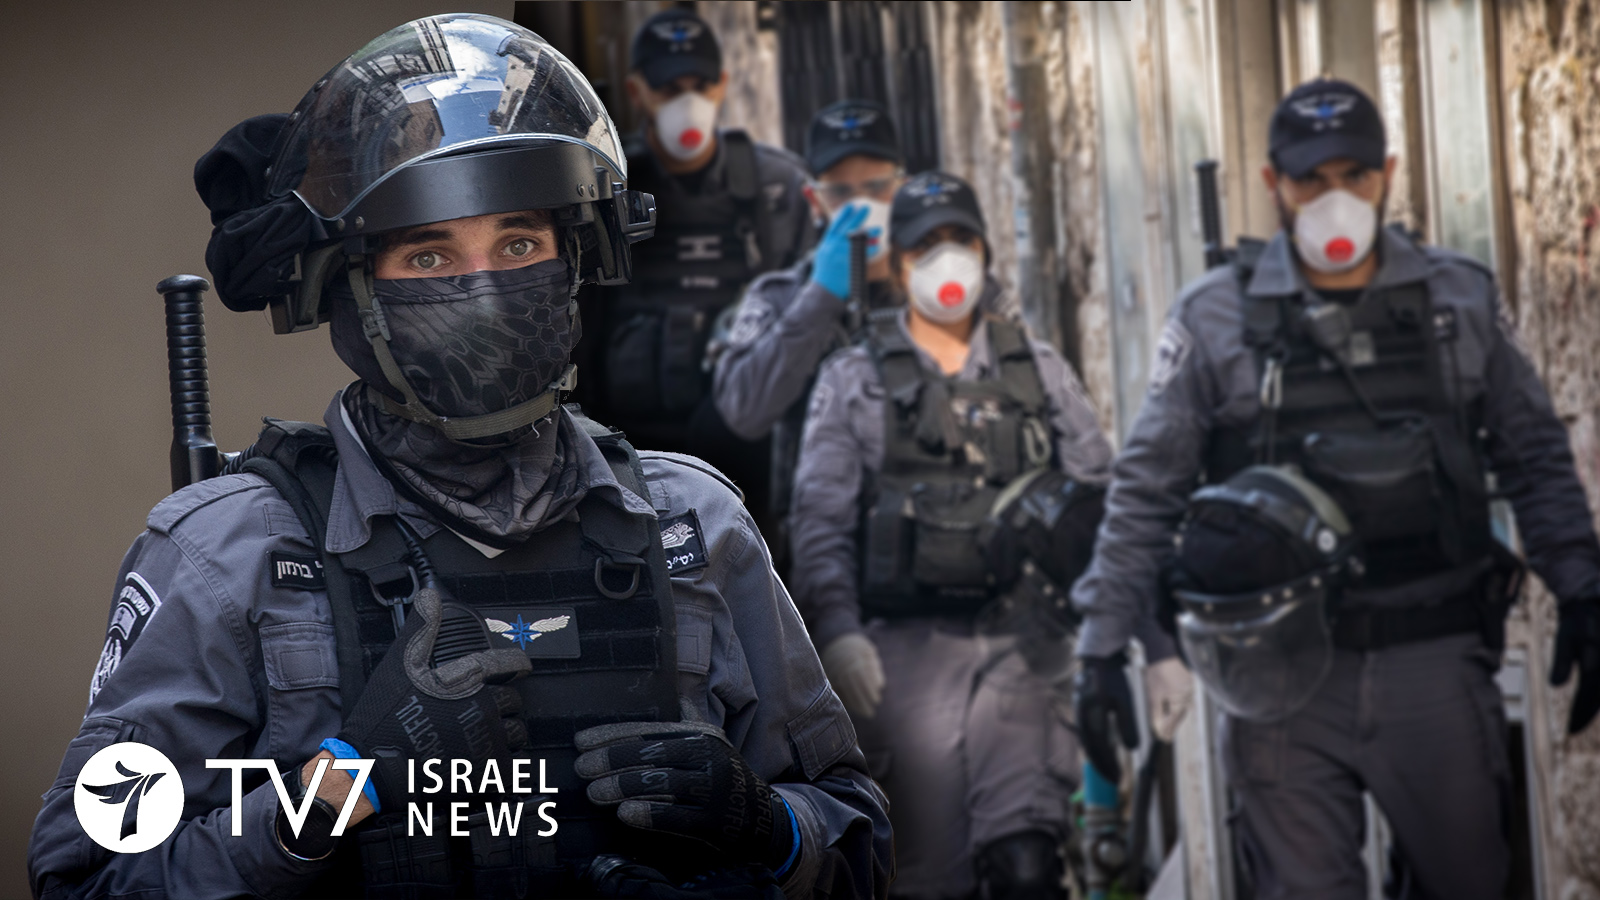 Un uomo armato ha ucciso 5 persone a Tel Aviv